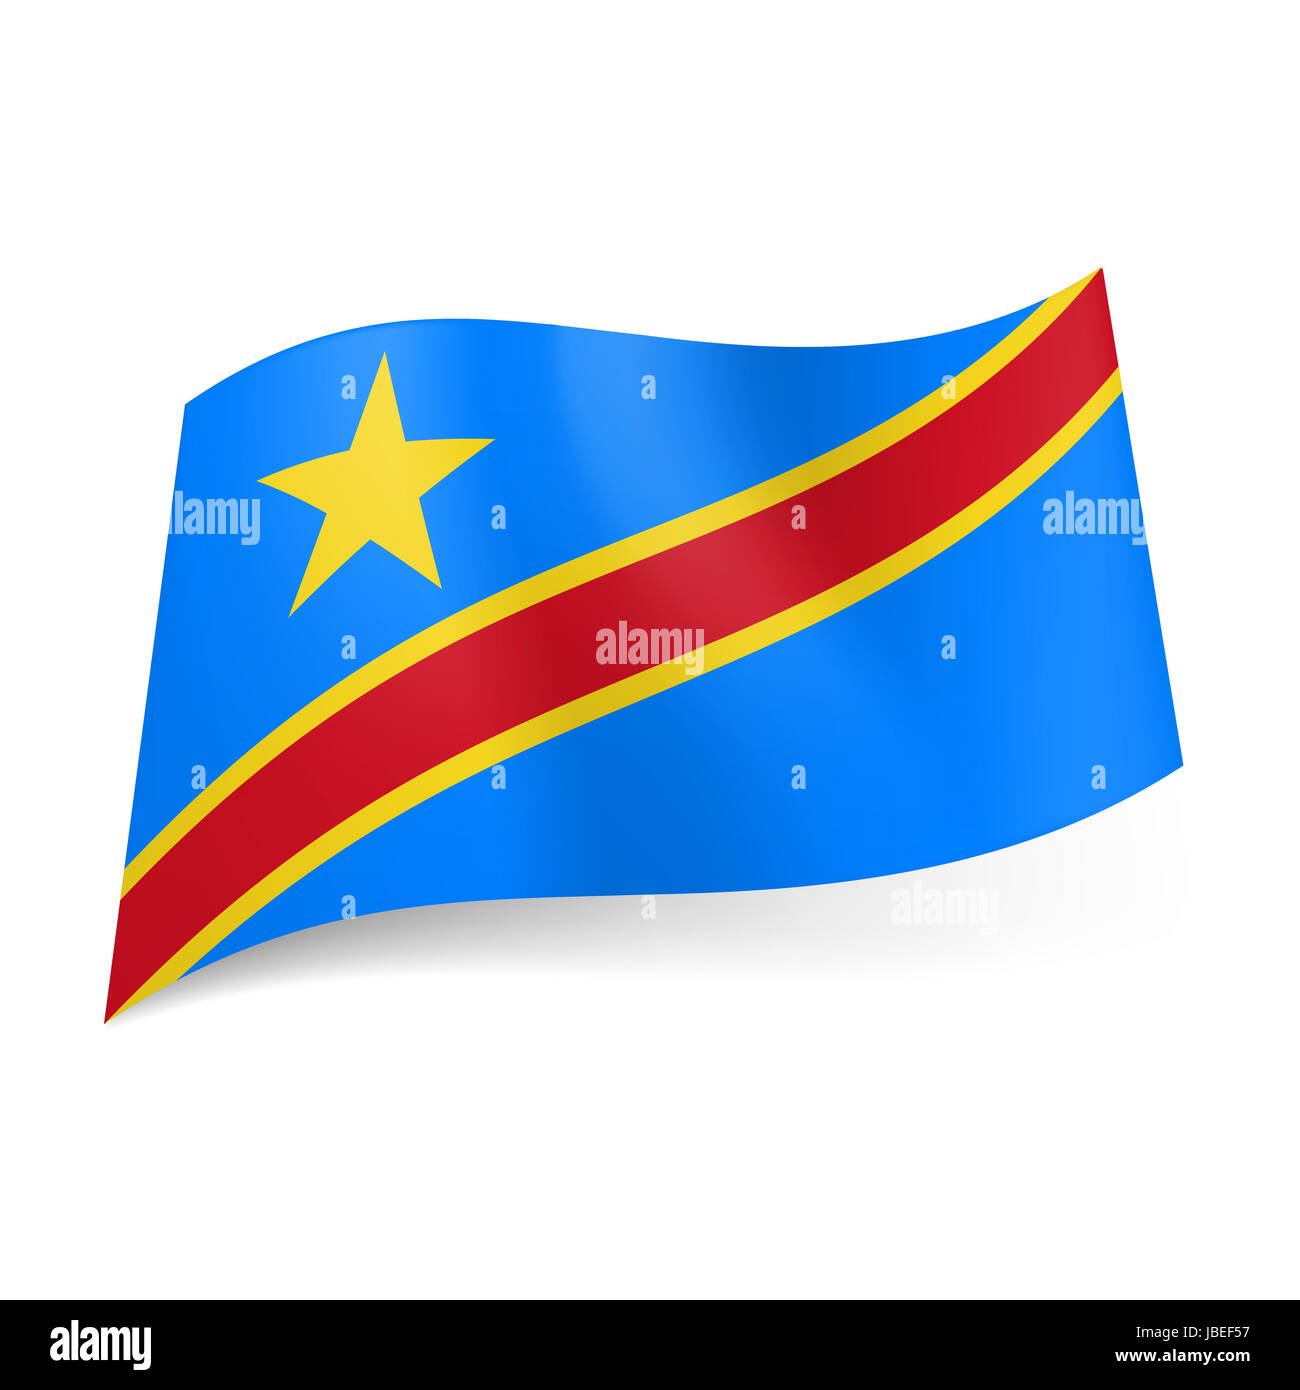 Lá cờ Cộng hòa Dân chủ Congo với hình ảnh màu xanh, đỏ và vàng sáng rực, mang đậm bản sắc dân tộc và lịch sử của đất nước này. Hãy khám phá những hình ảnh tuyệt đẹp về lá cờ này và cùng tìm hiểu thêm về đất nước Congo.